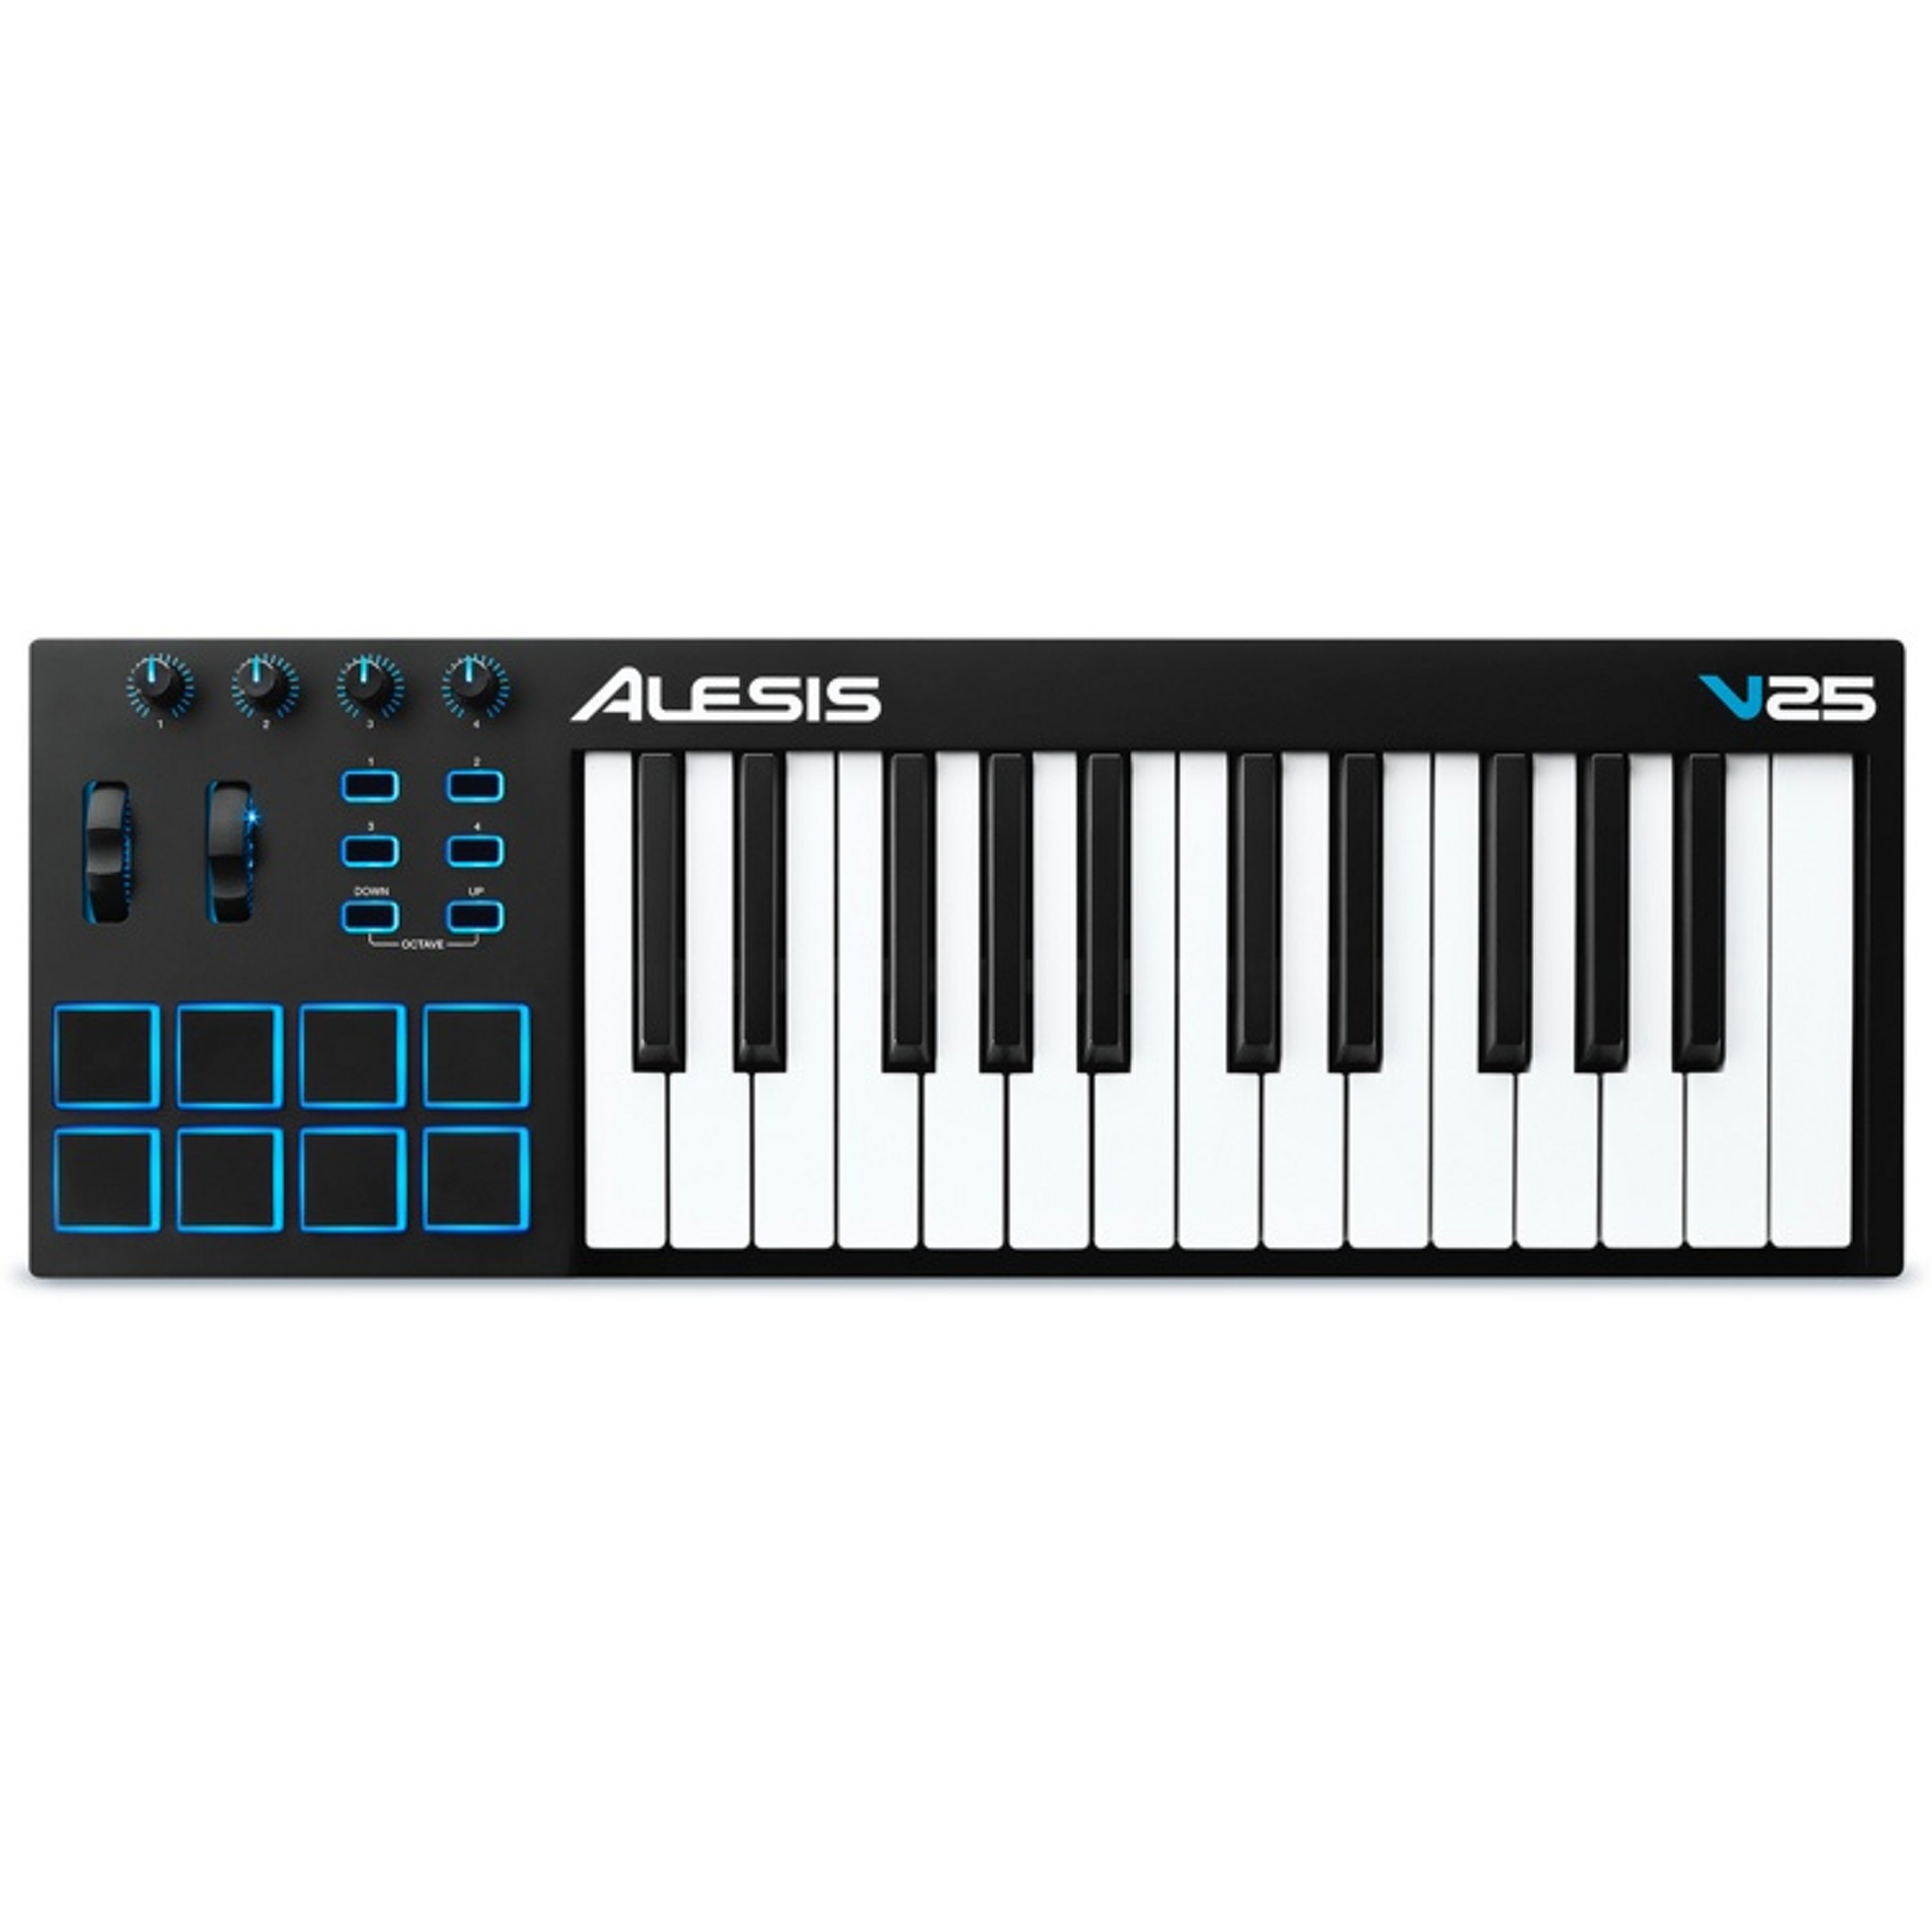 Alesis V25 Keyboard Controller